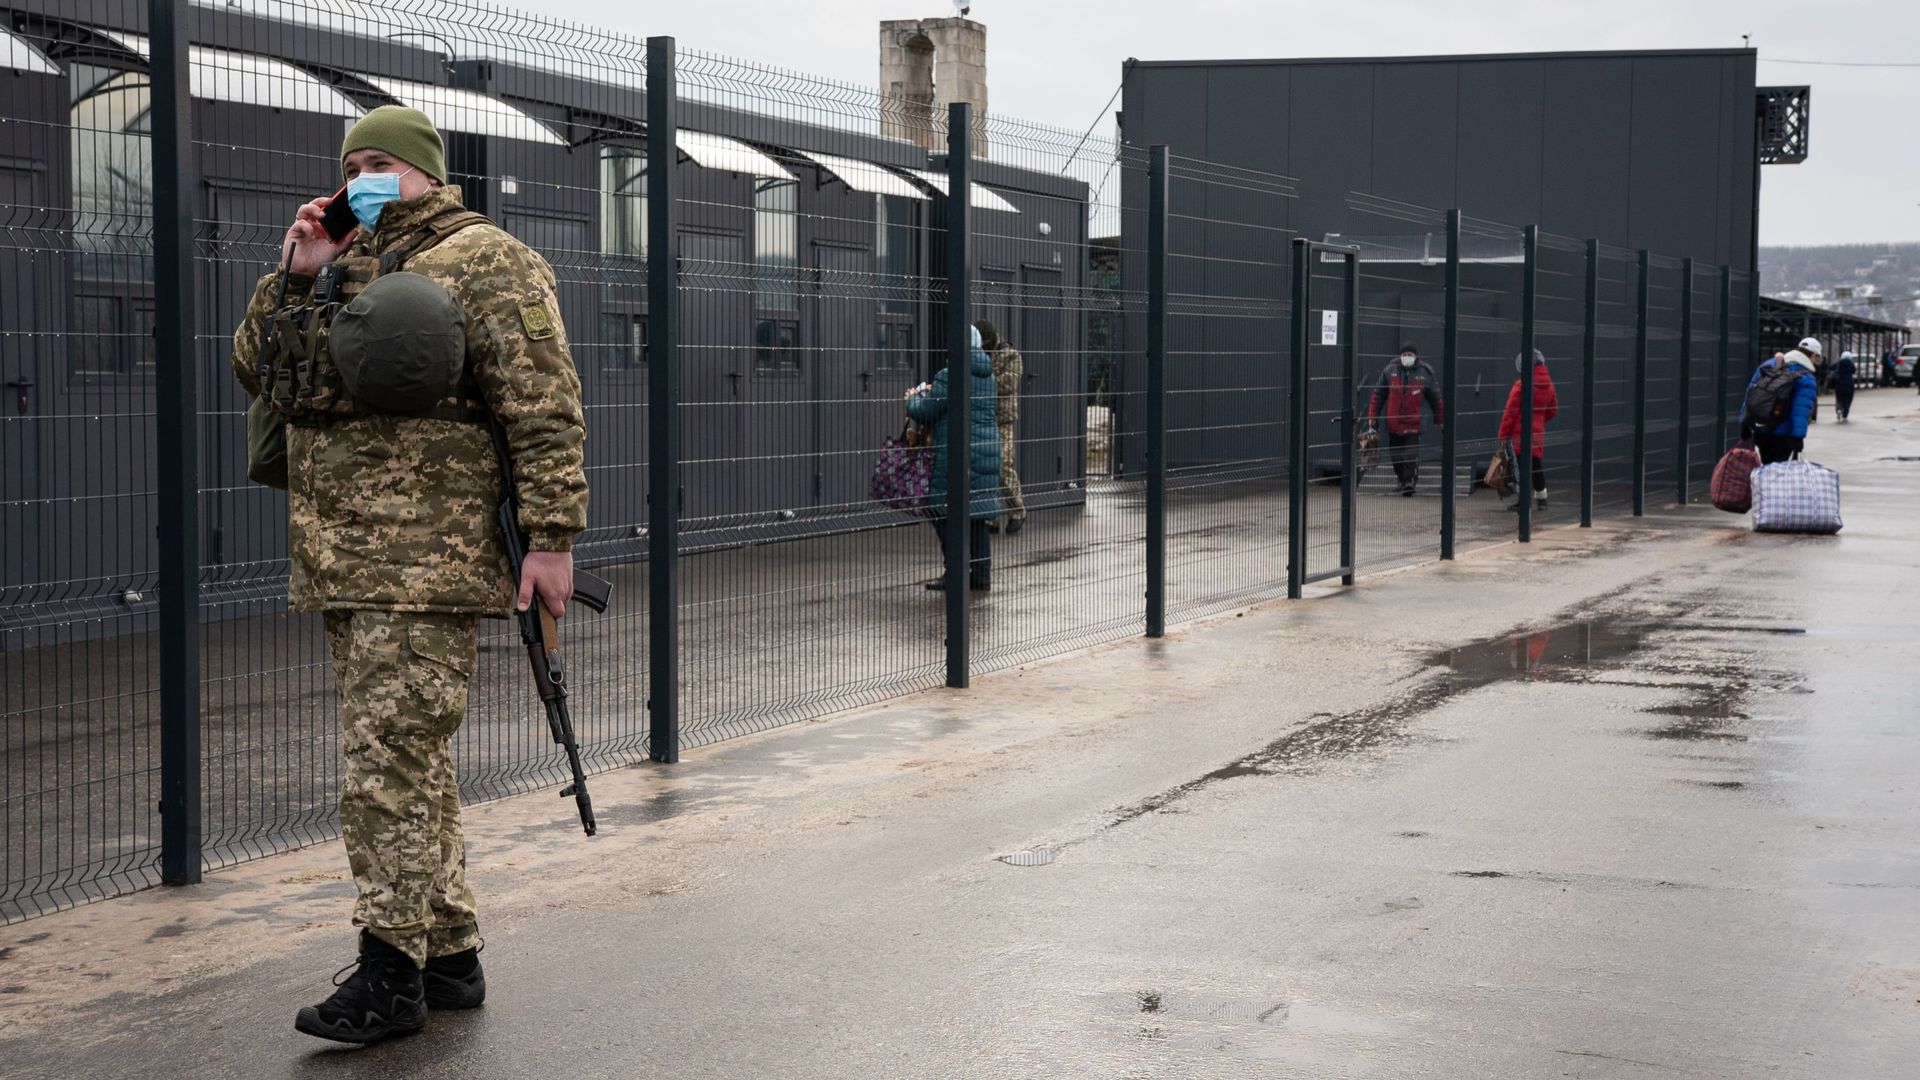 Point de passage de Stanytsia Luhanska. Depuis 2014, l'est de l'Ukraine est divisé par une ligne de front de 427 km séparant la zone contrôlée par le gouvernement de la zone non contrôlée par le gouvernement des régions de Donetsk et Louhansk.